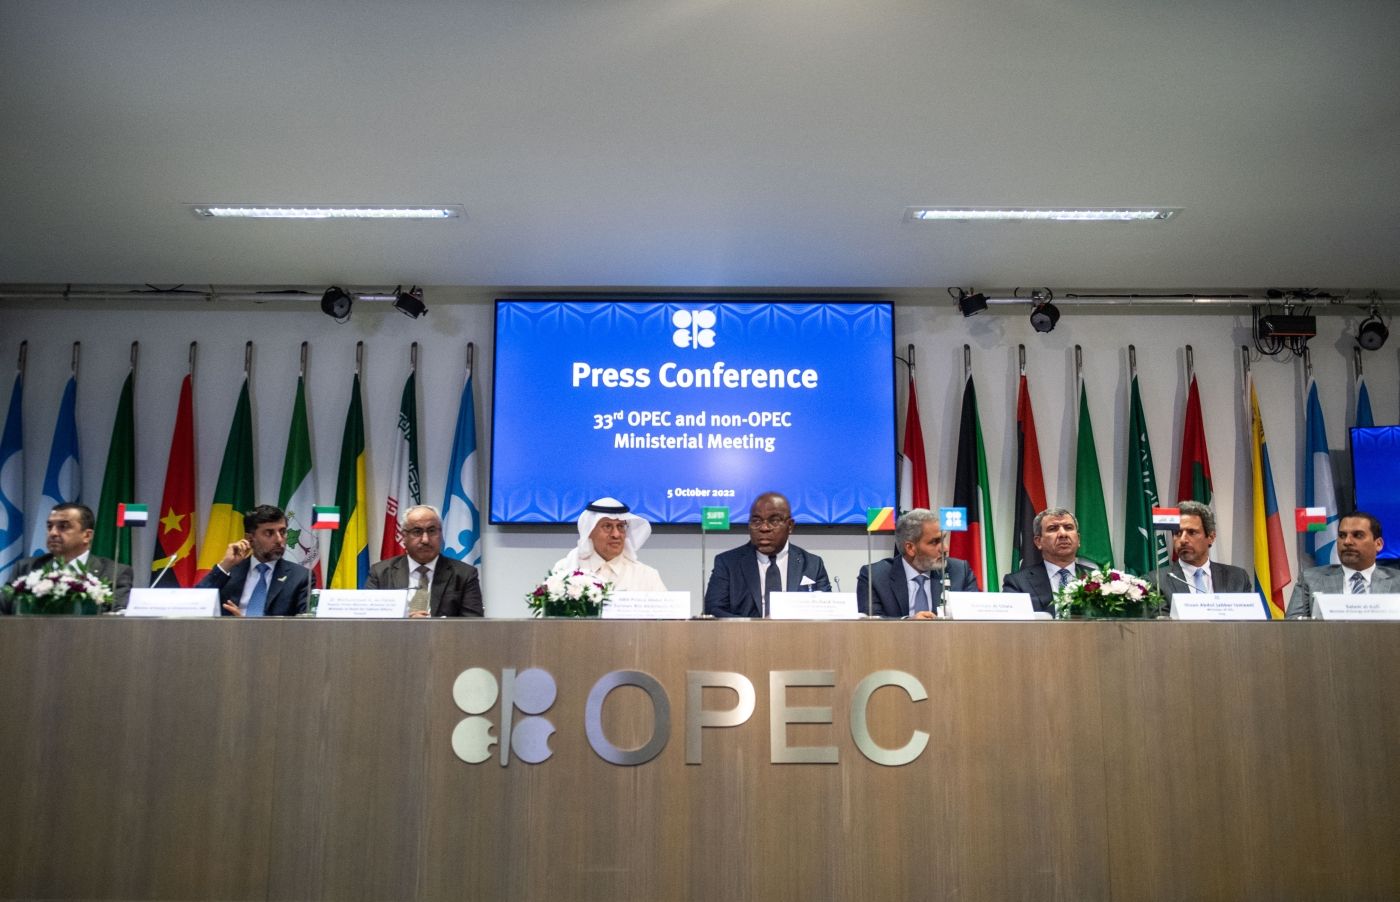 Des représentants de pays membres de l’OPEP participent à une conférence de presse à l’issue de la 45e réunion du Comité ministériel conjoint de suivi et de la 33e réunion ministérielle des pays membres et non membres de l’OPEP à Vienne (Autriche), le 5 octobre 2022 (AFP)